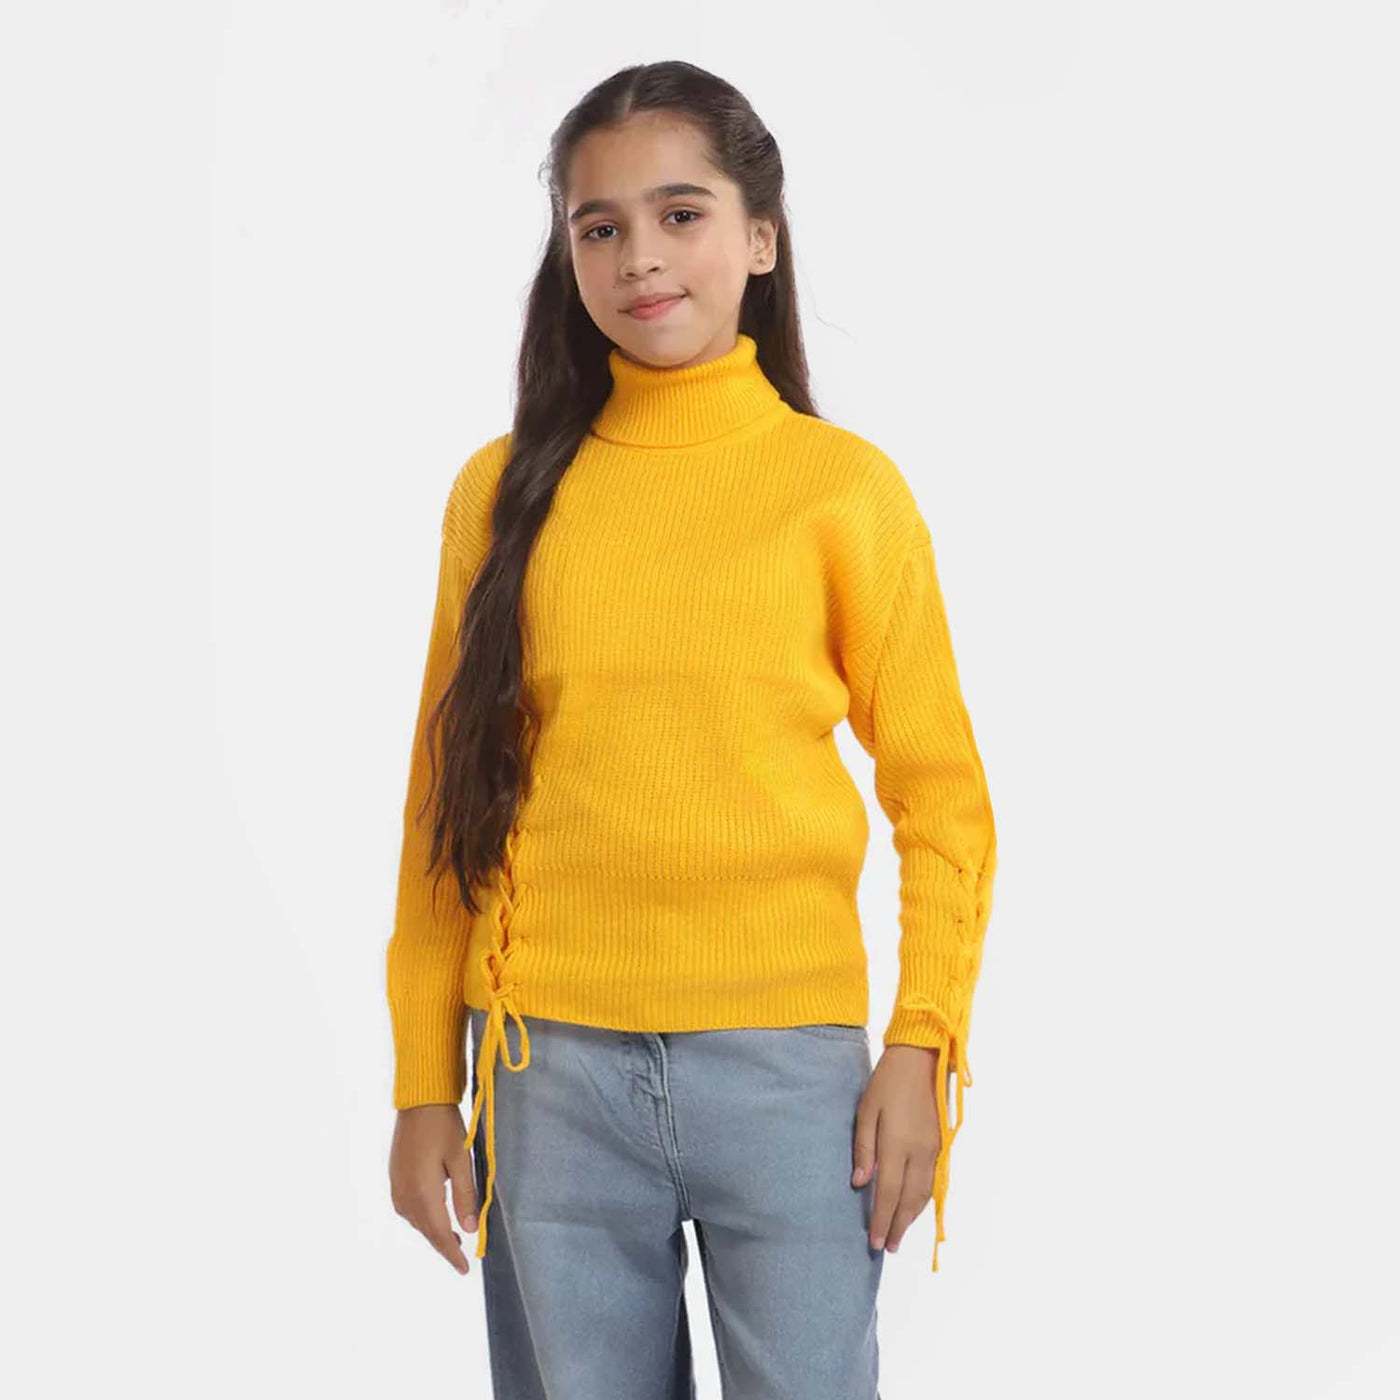 Girls Sweater -Yellow